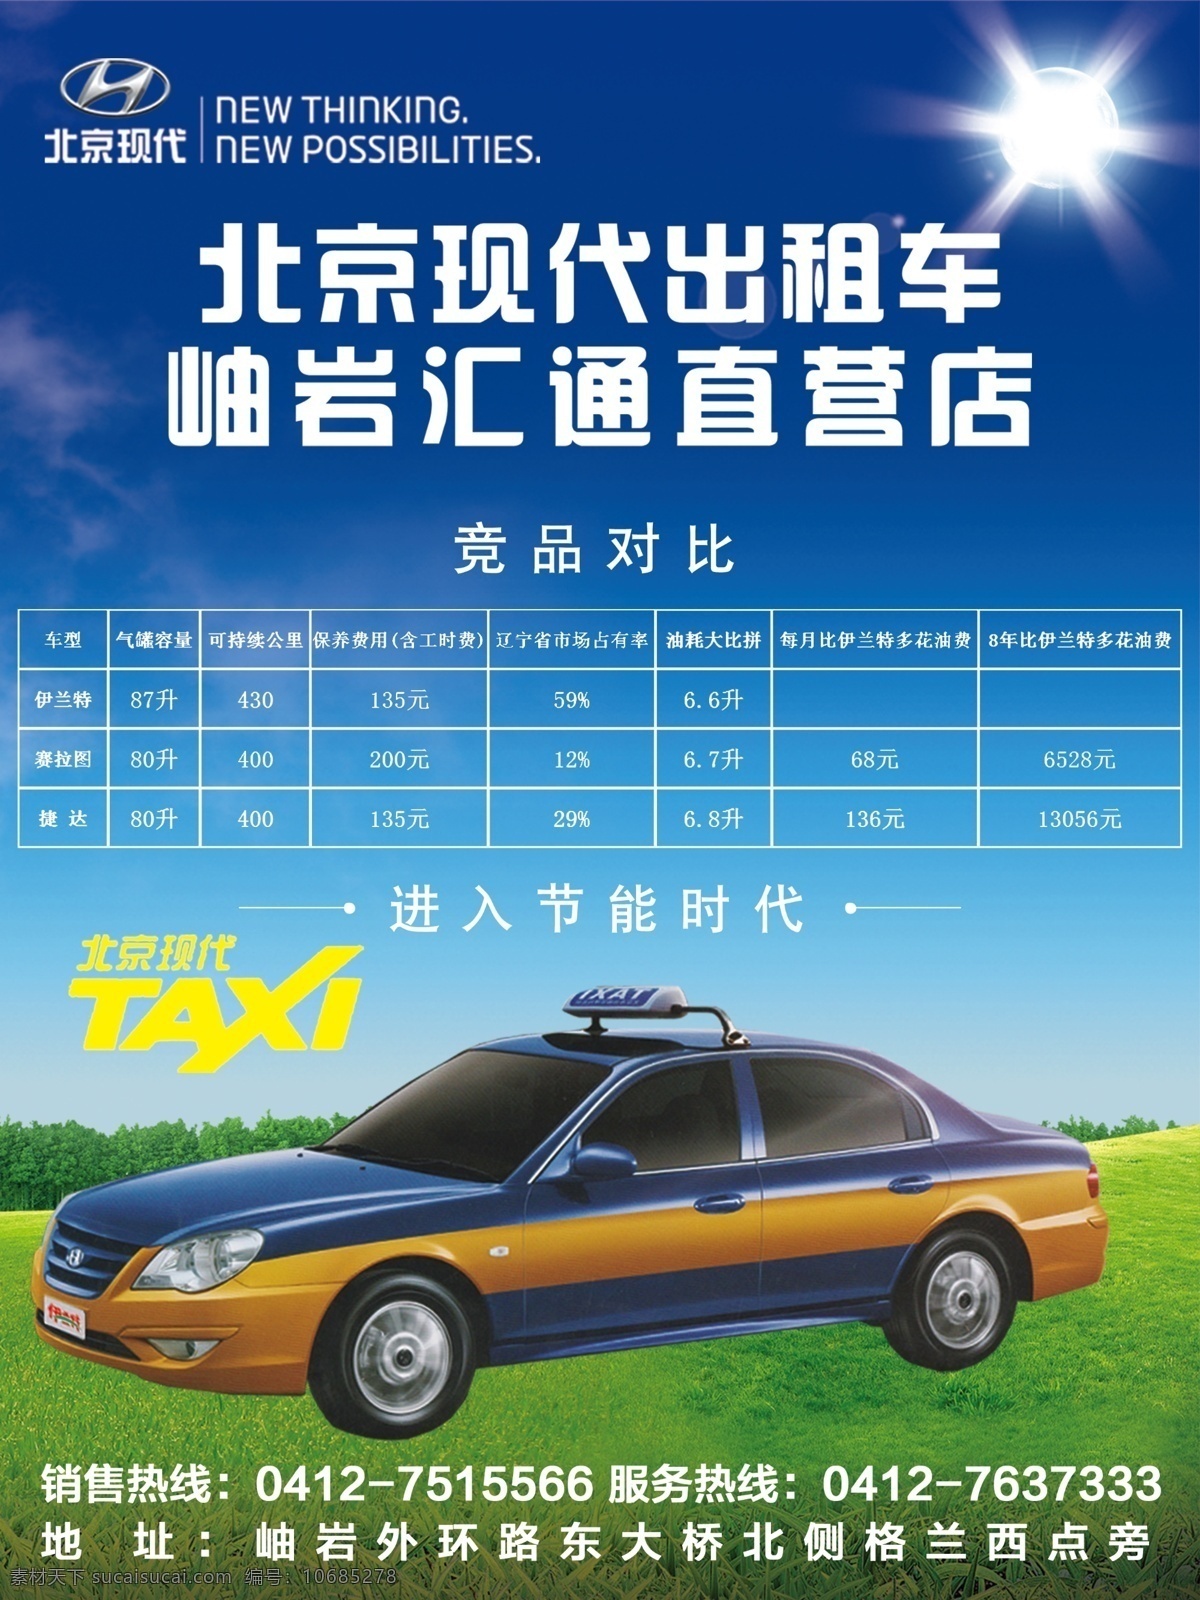 北京现代 出租车 伊兰特 出租车广告 汽车广告 汽车素材 伊兰特广告